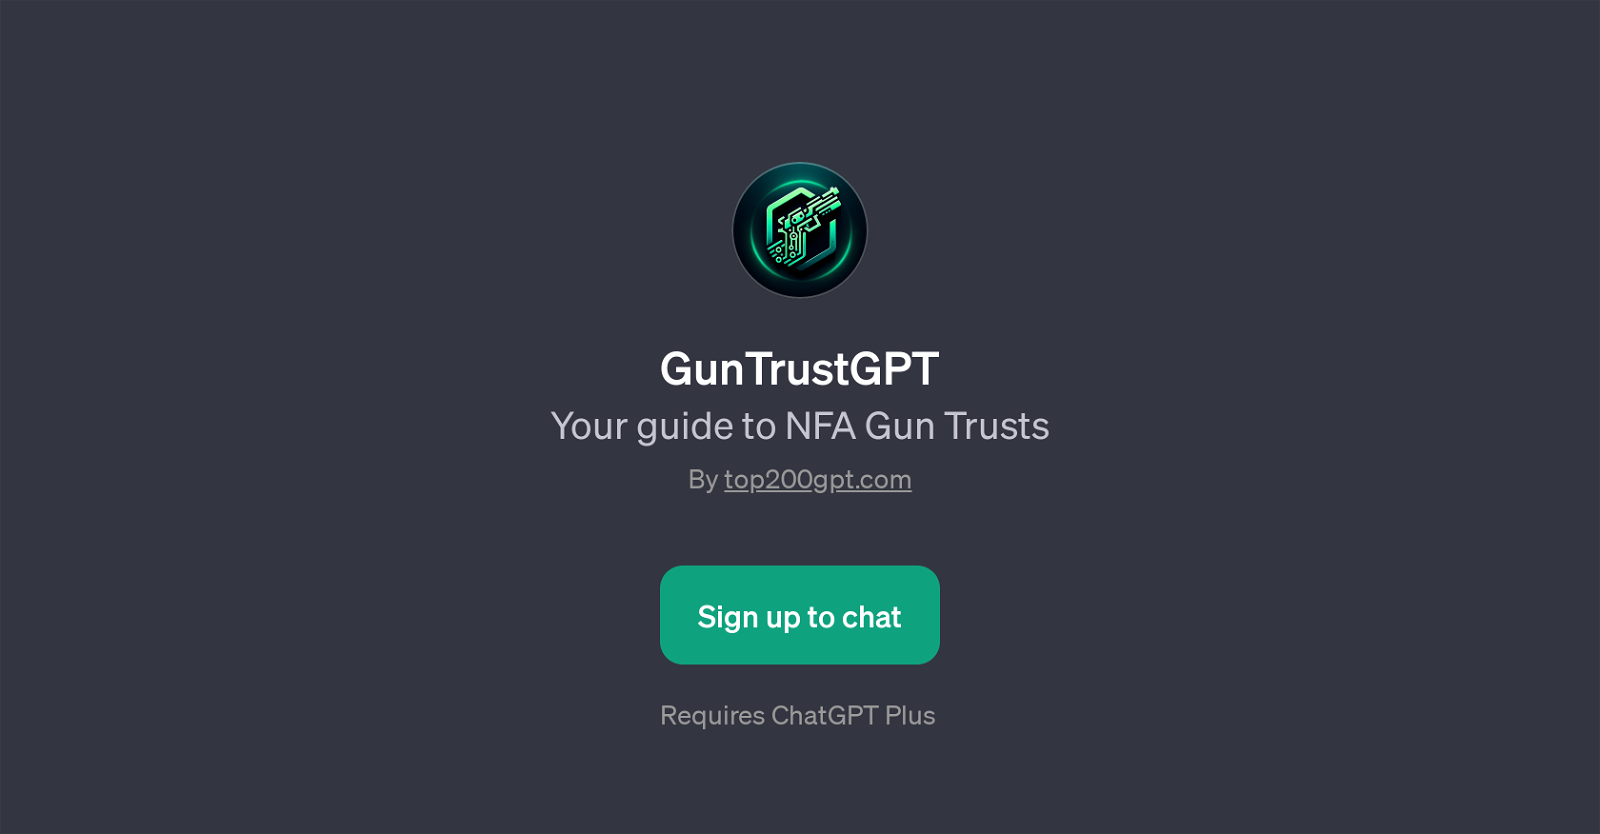 GunTrustGPT website